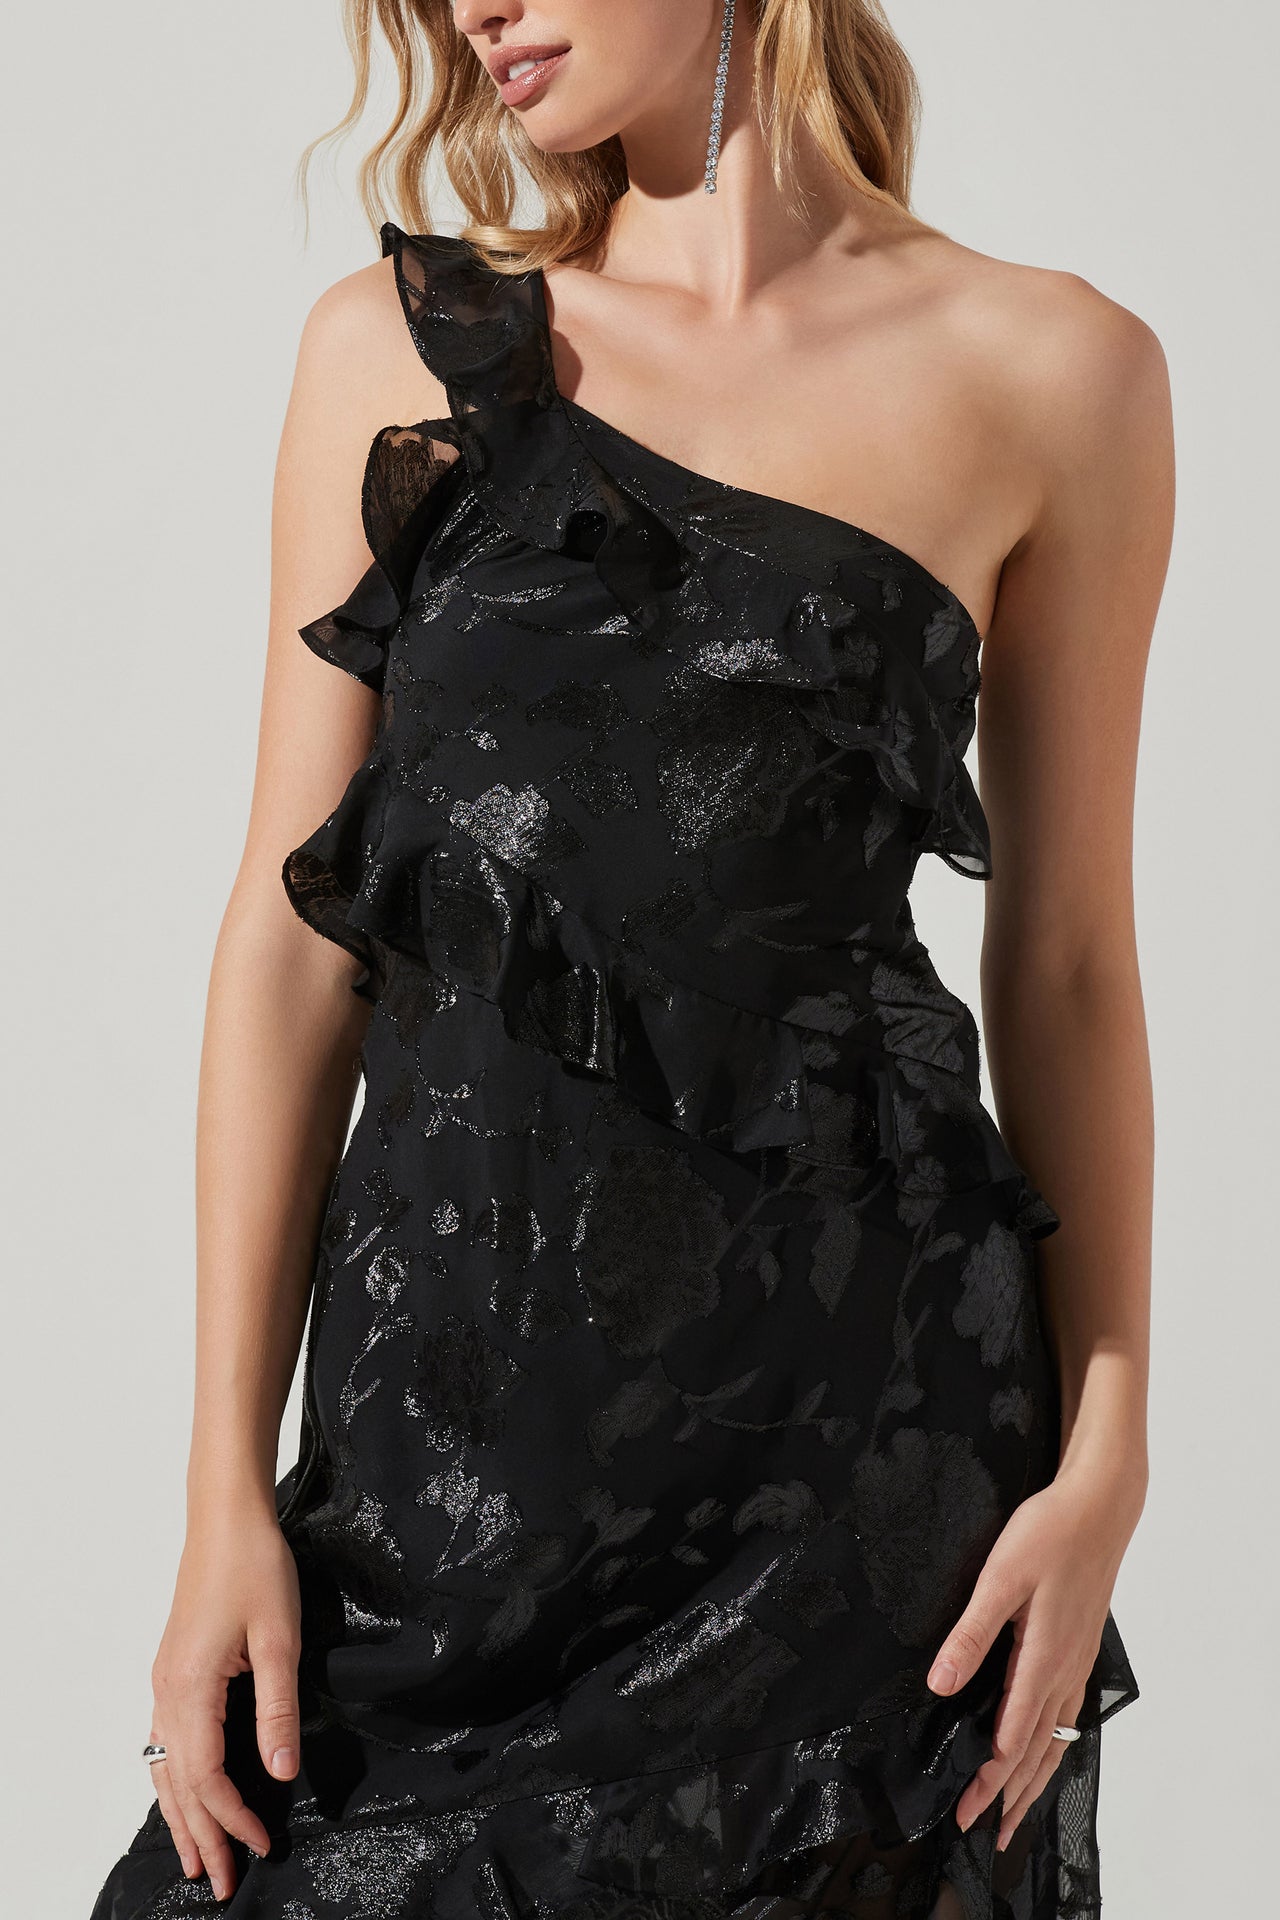 Andrea Dress Black, Maxi Dress by ASTR | LIT Boutique